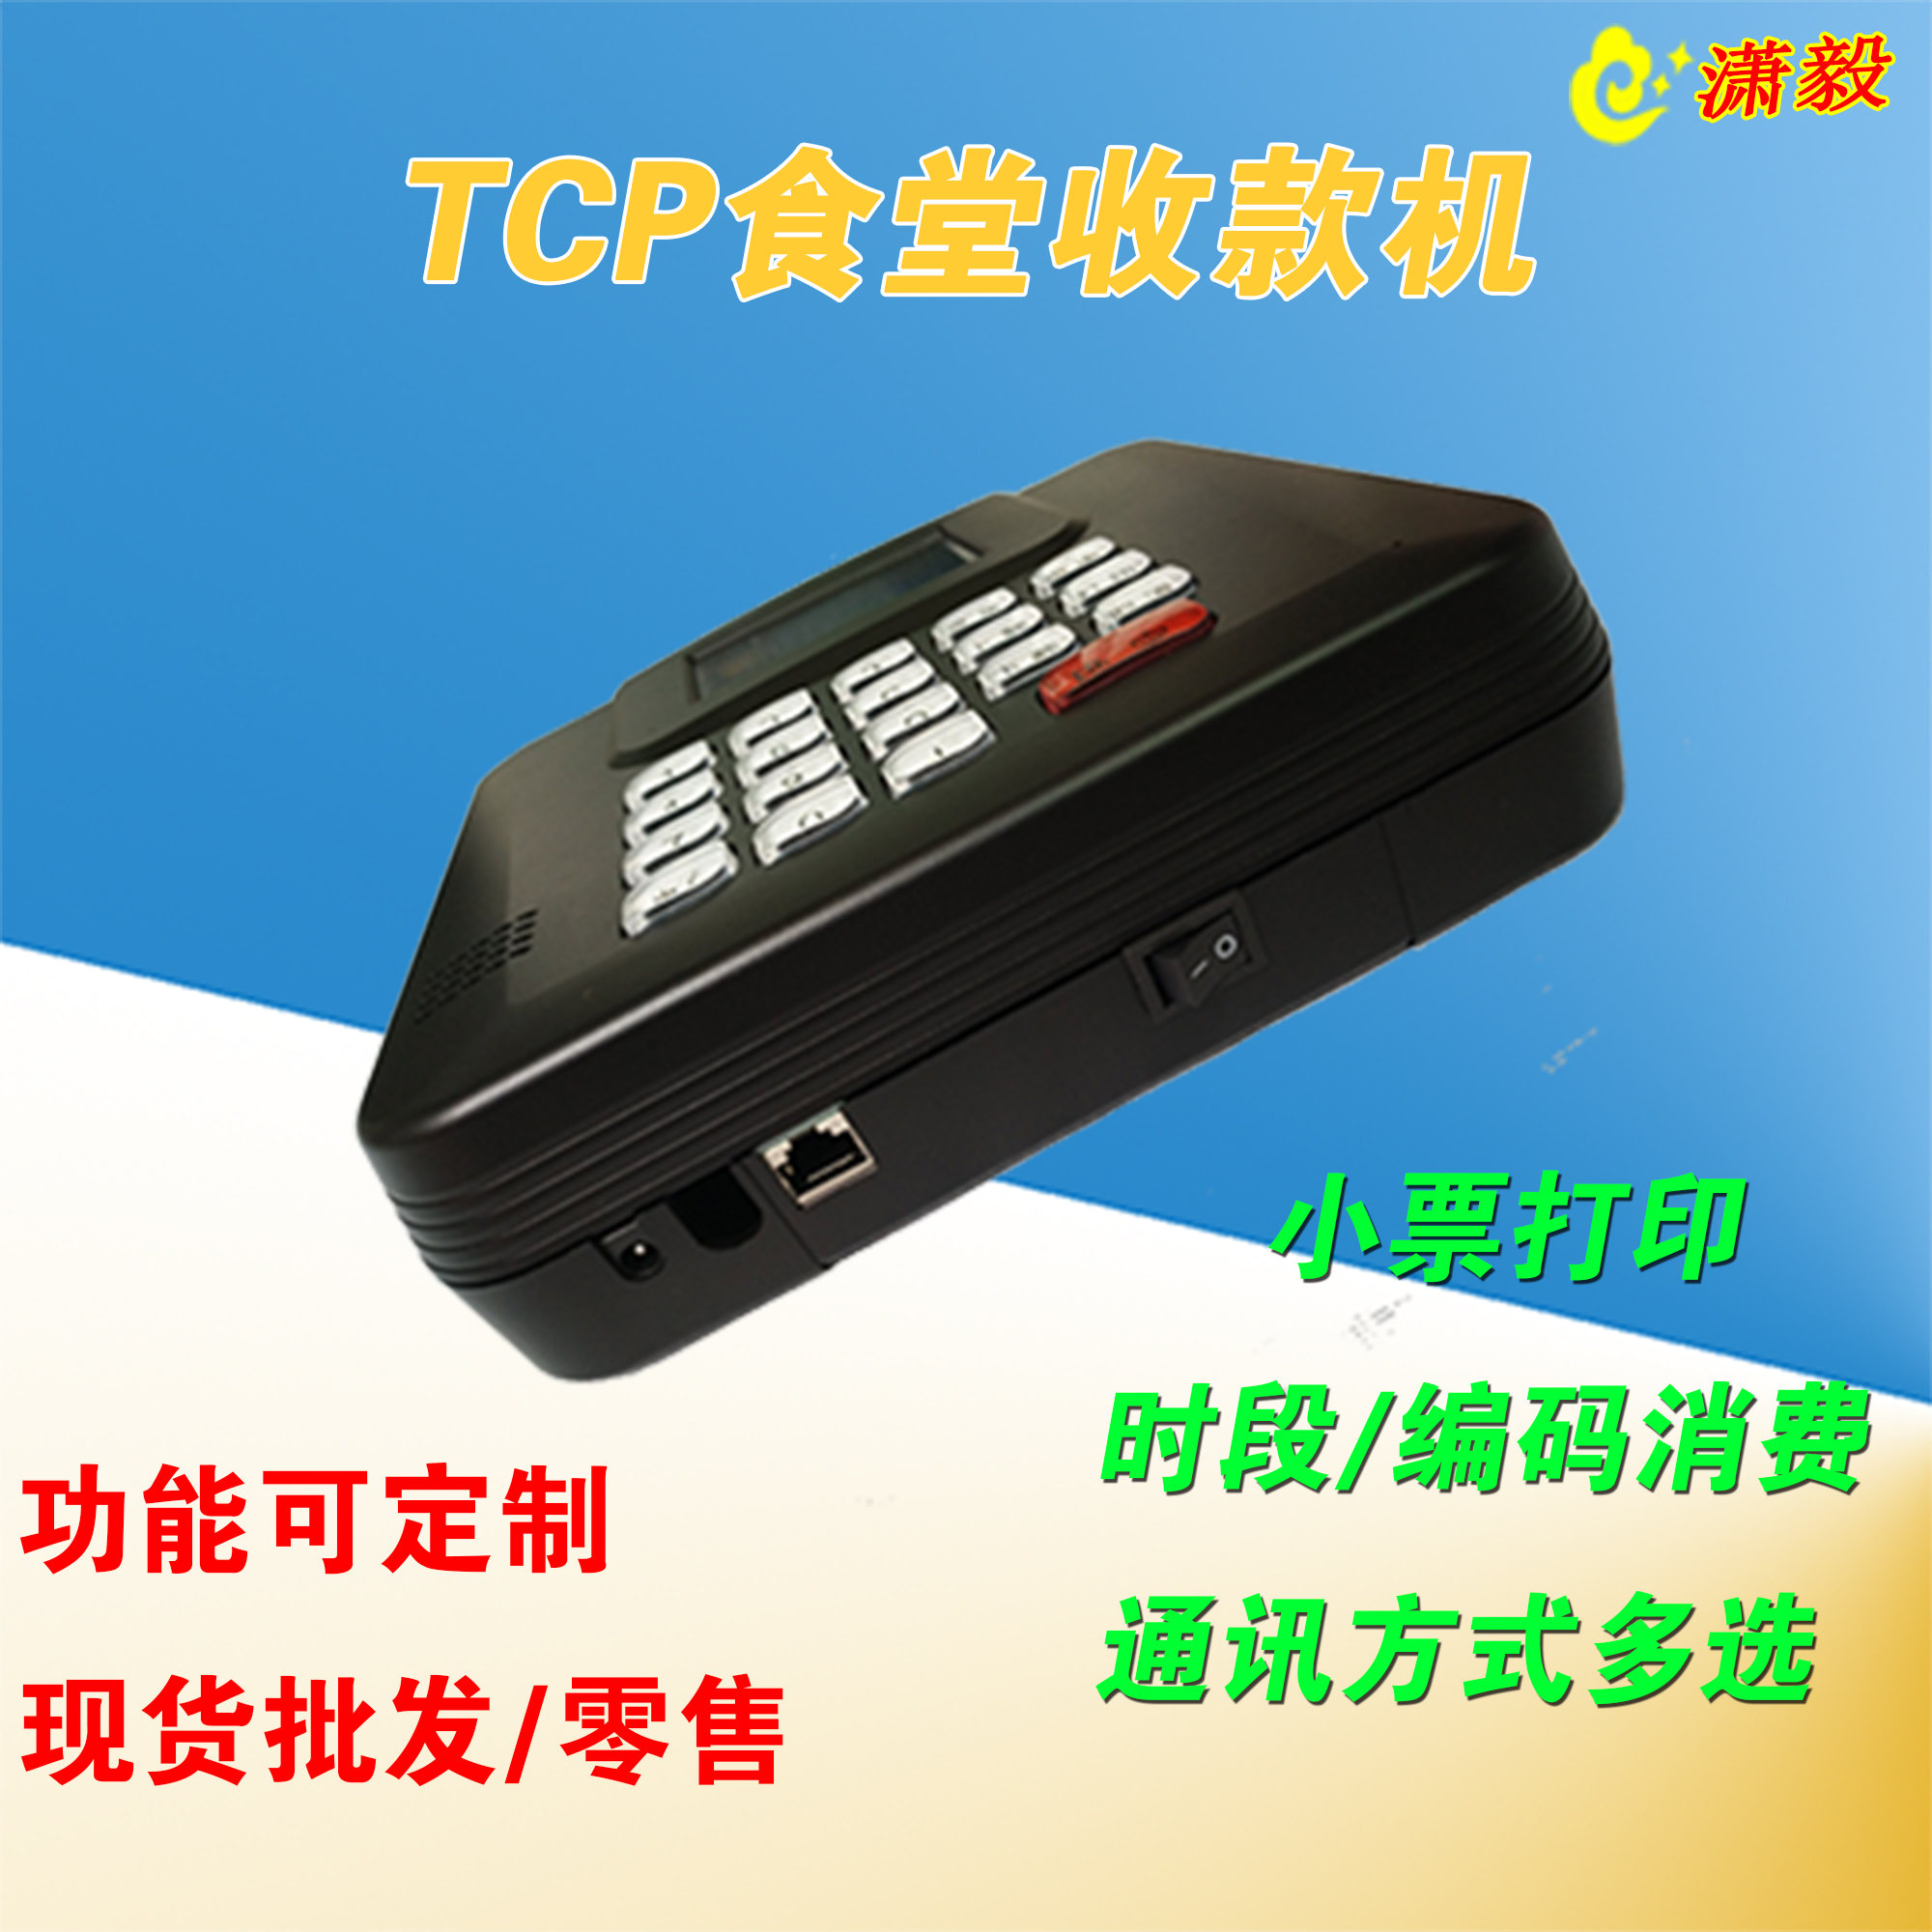 供应中文语音播报脱机可用USB语音刷卡机一卡通消费机智能刷卡机